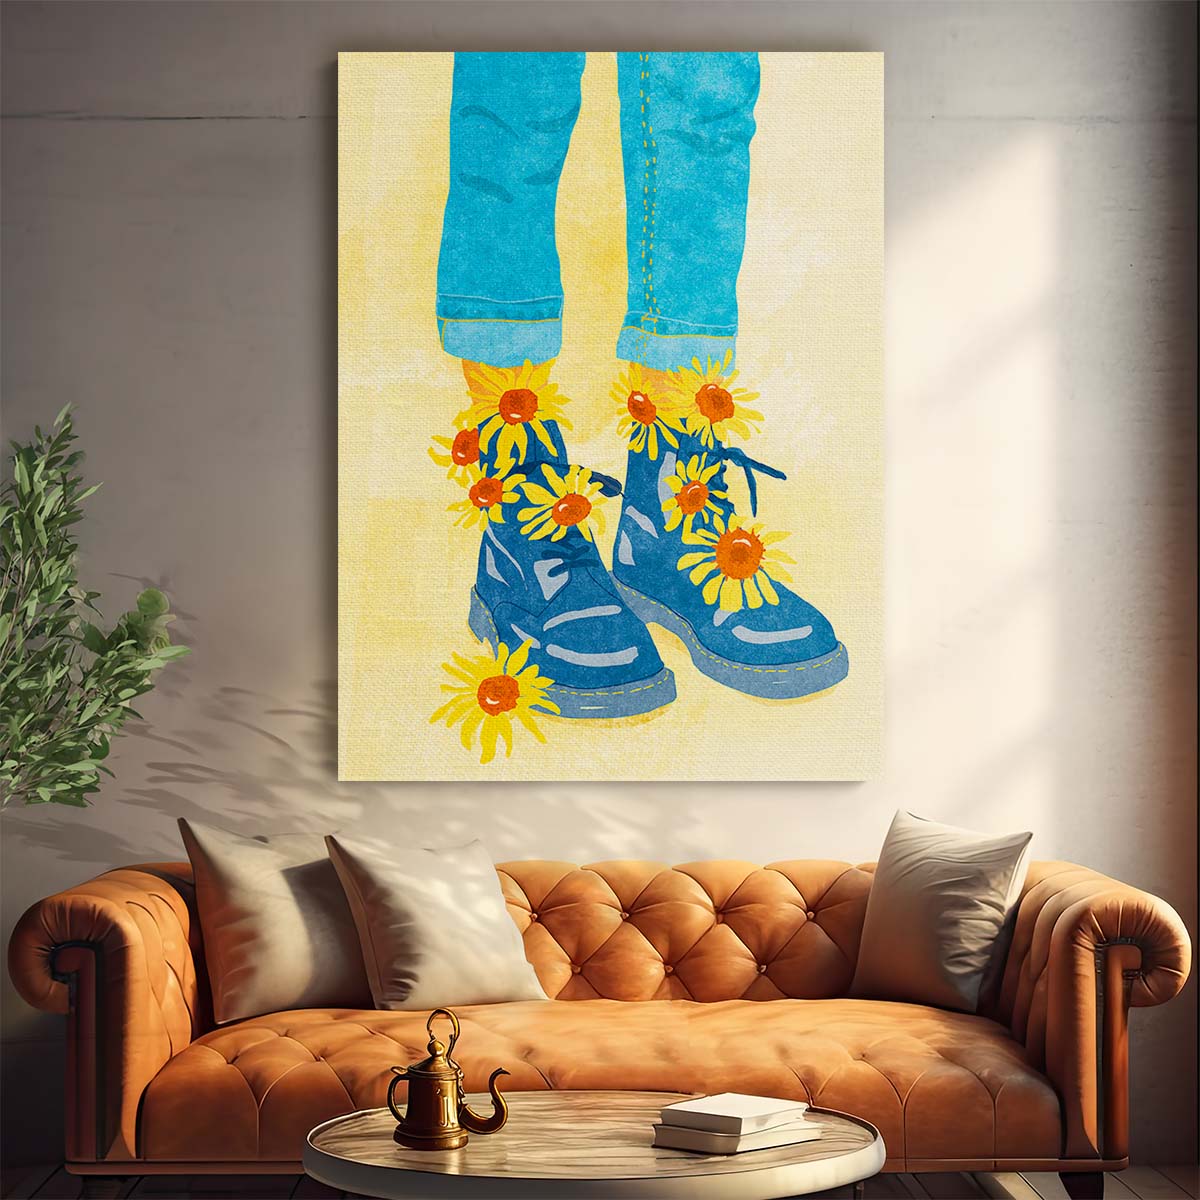 Sunflower Walk Illustration Summer Botanical Feminist Art by Raissa Oltmanns by Luxuriance Designs, made in USA